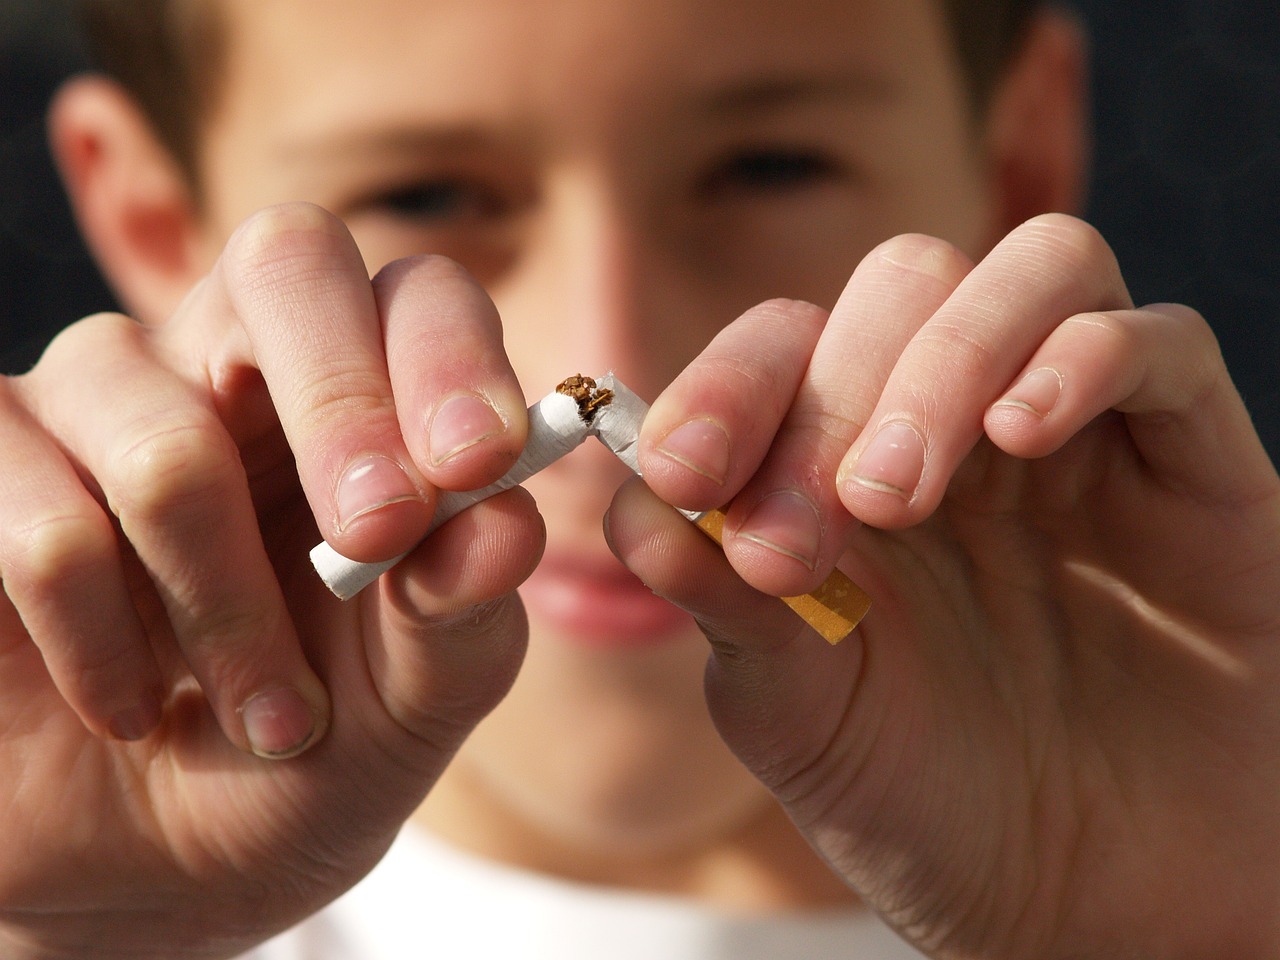 Tabaksgebruik onder tieners 